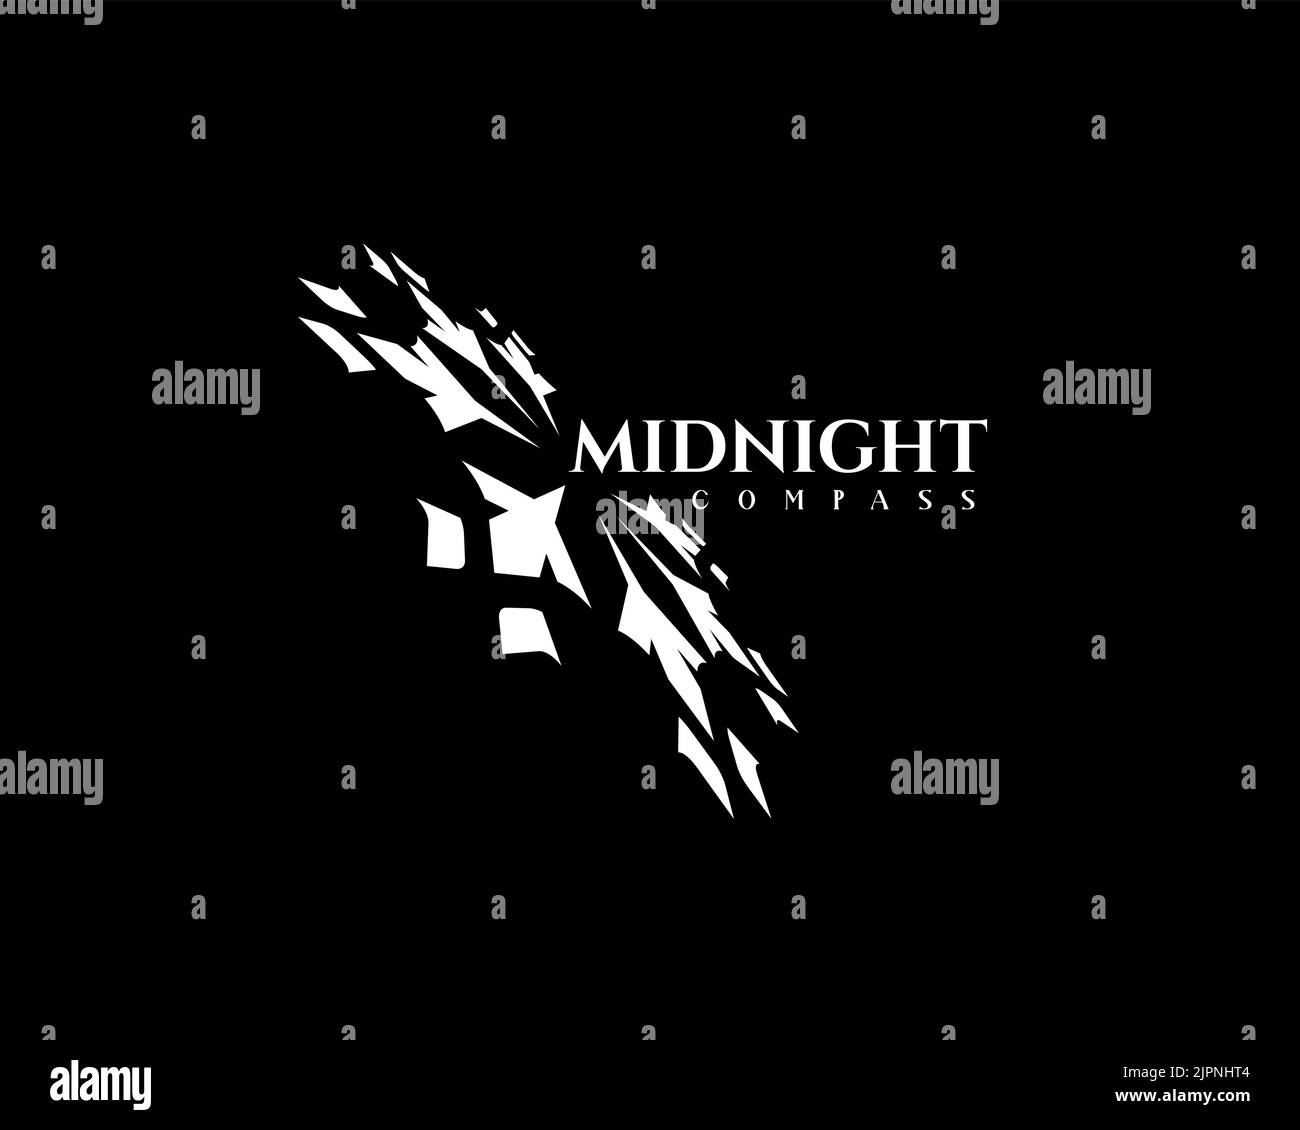 Ein Mitternachtskompass-Logo-Design mit Schneeflocken isoliert auf einem dunklen Hintergrund Stock Vektor